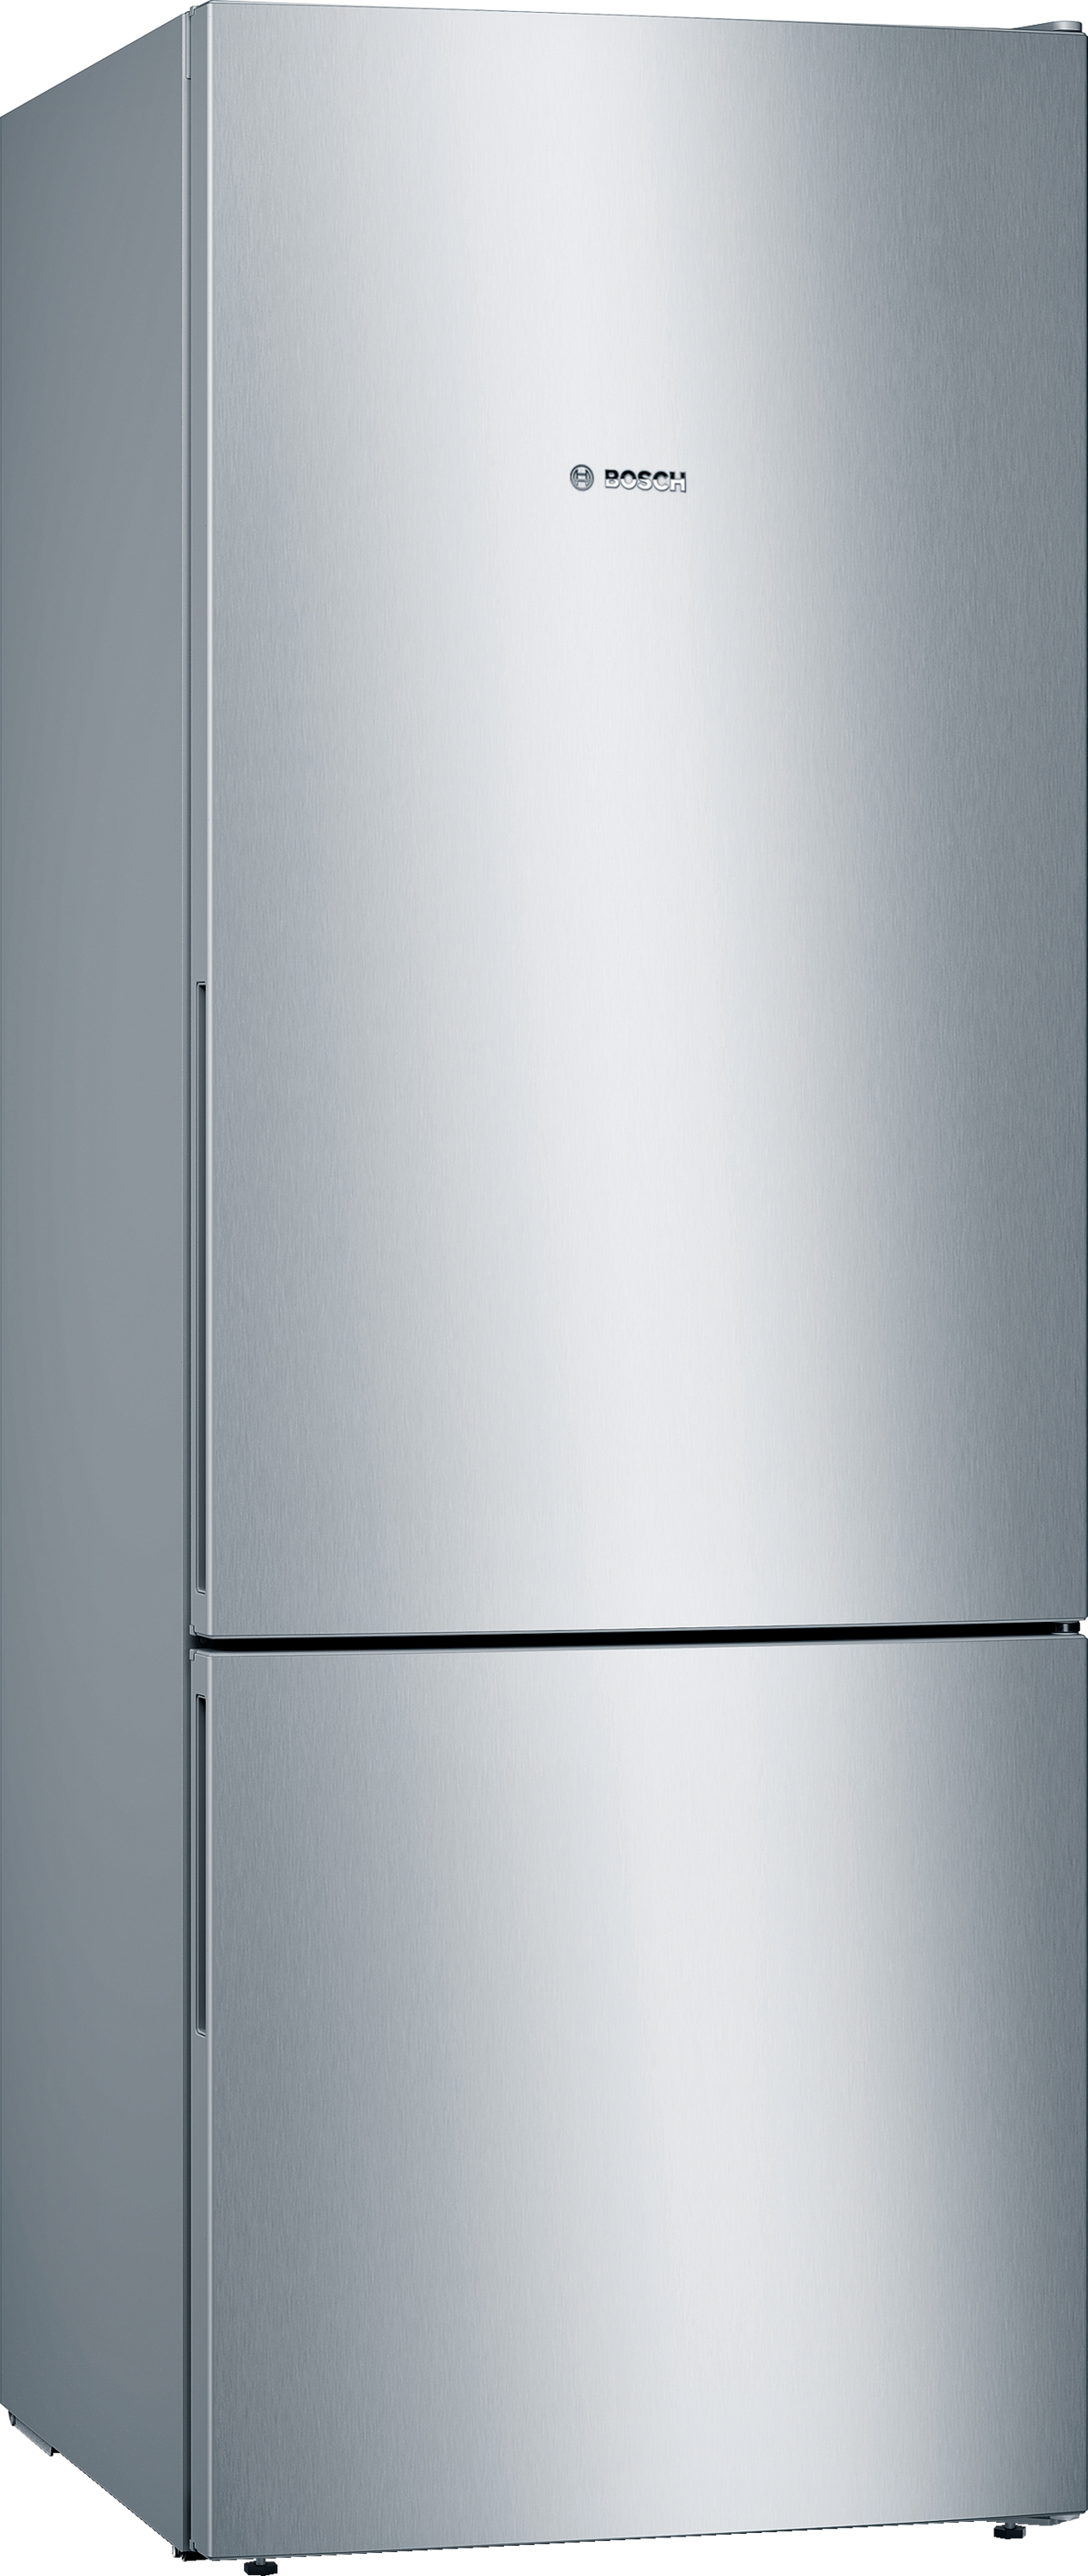 KGV58VLEAS Combină frigorifică independentă 5 ANI GARANTIE. 503 l, Low Frost, VitaFresh, Clasa E, H 191 cm, Argintiu